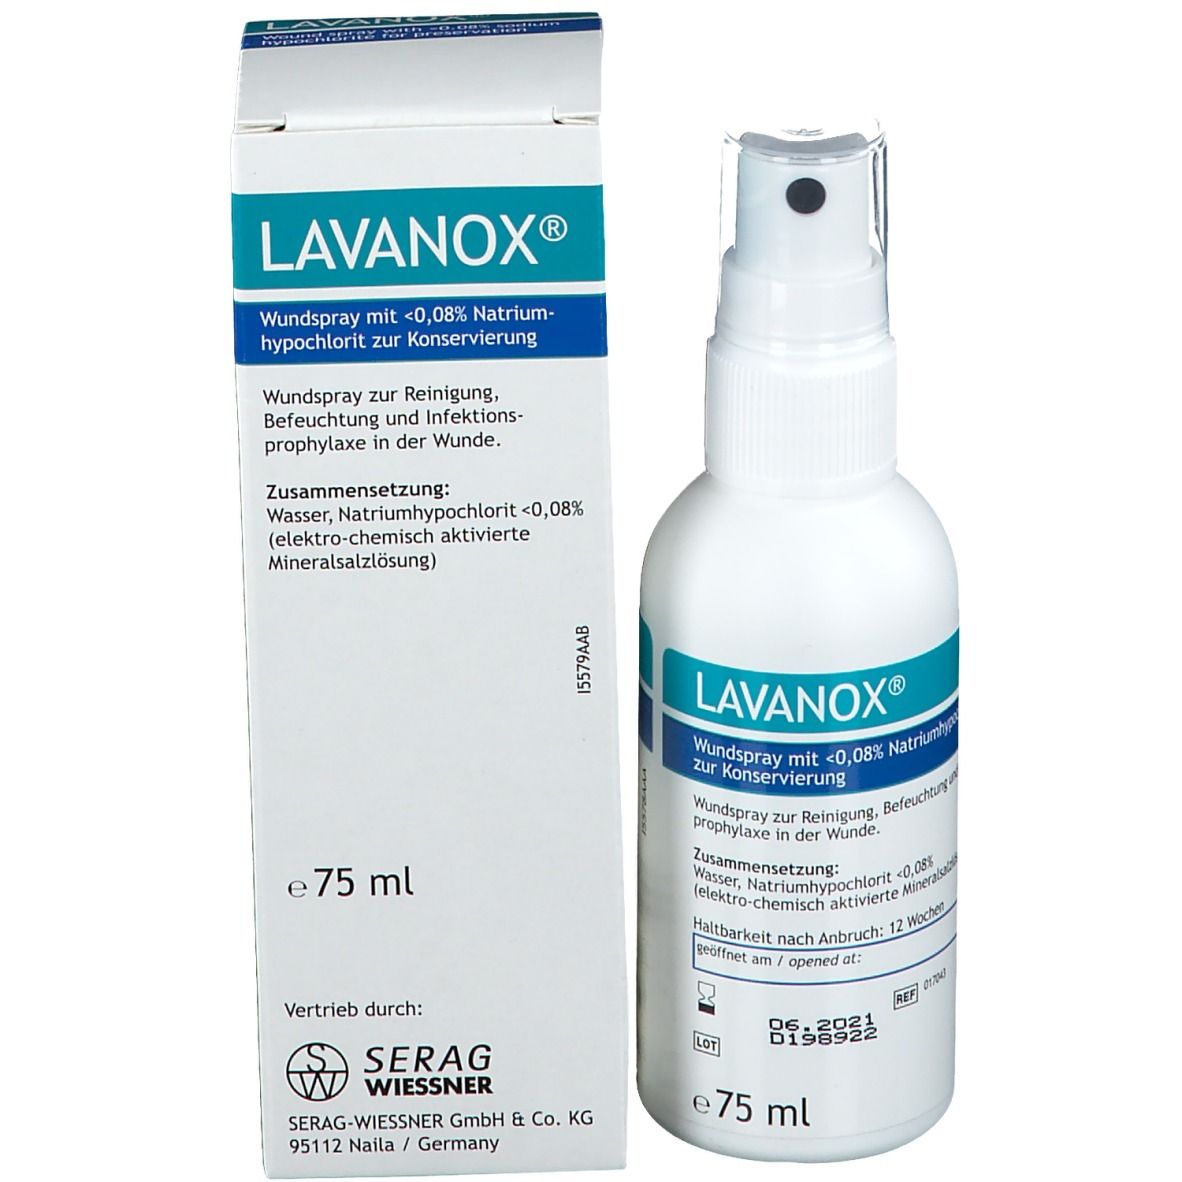 LAVANOX® Wundspray